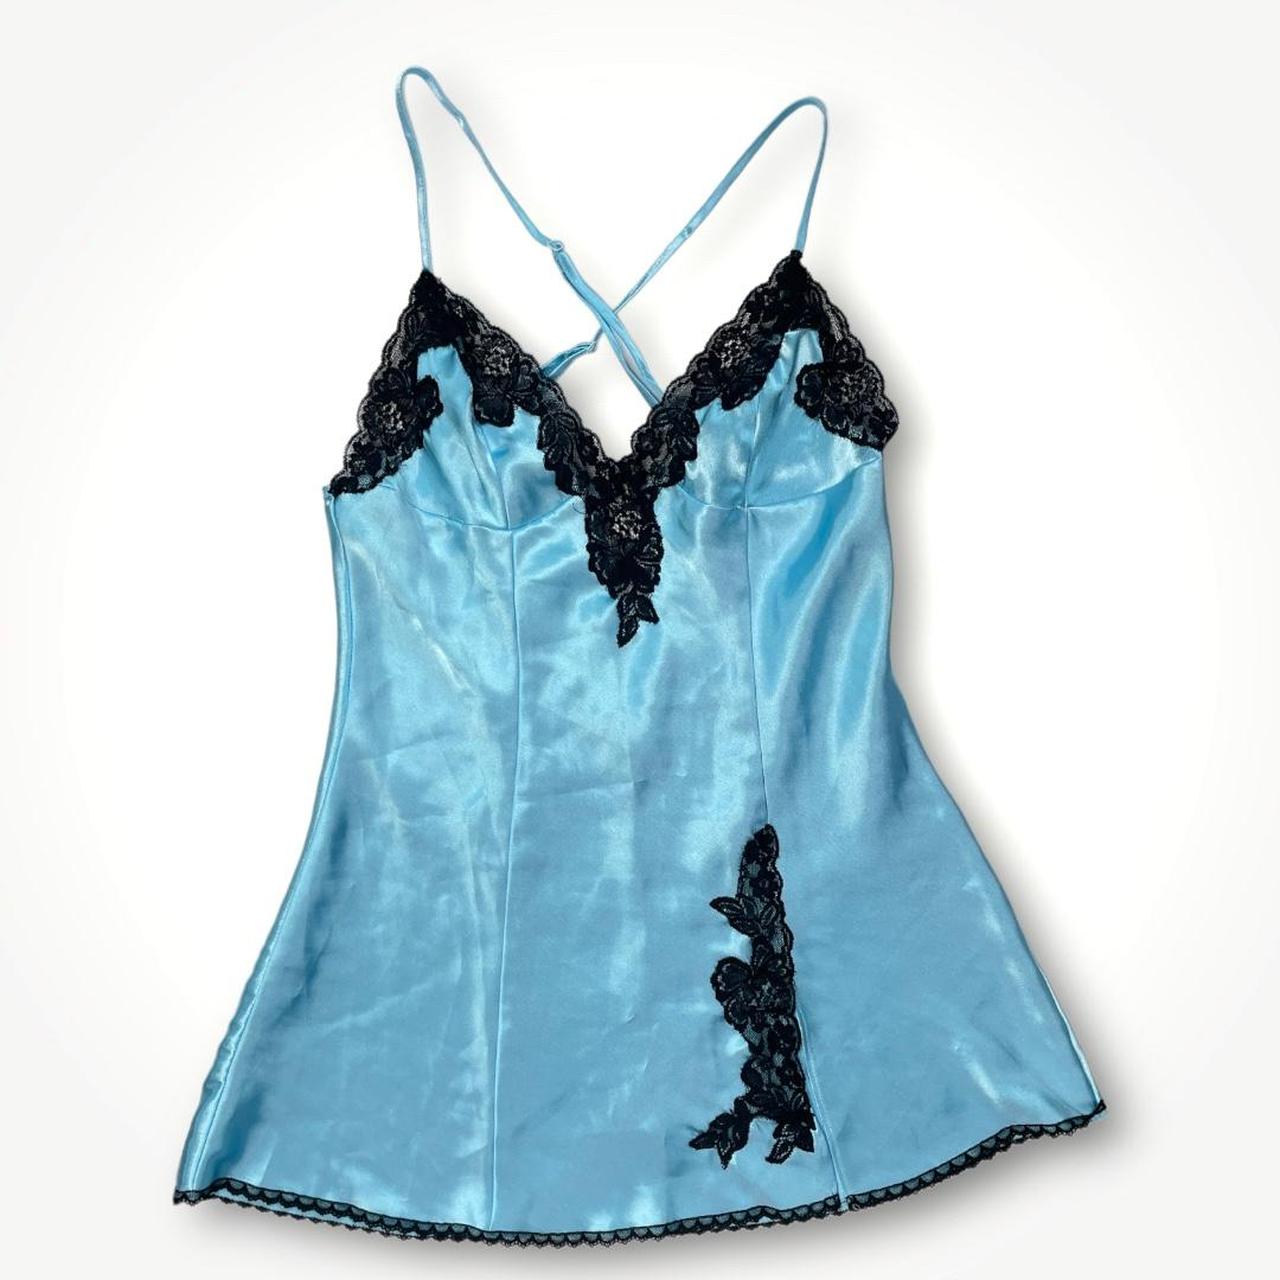 Product Image 1 - Vintage Y2K Blue Slip Dress

Similar